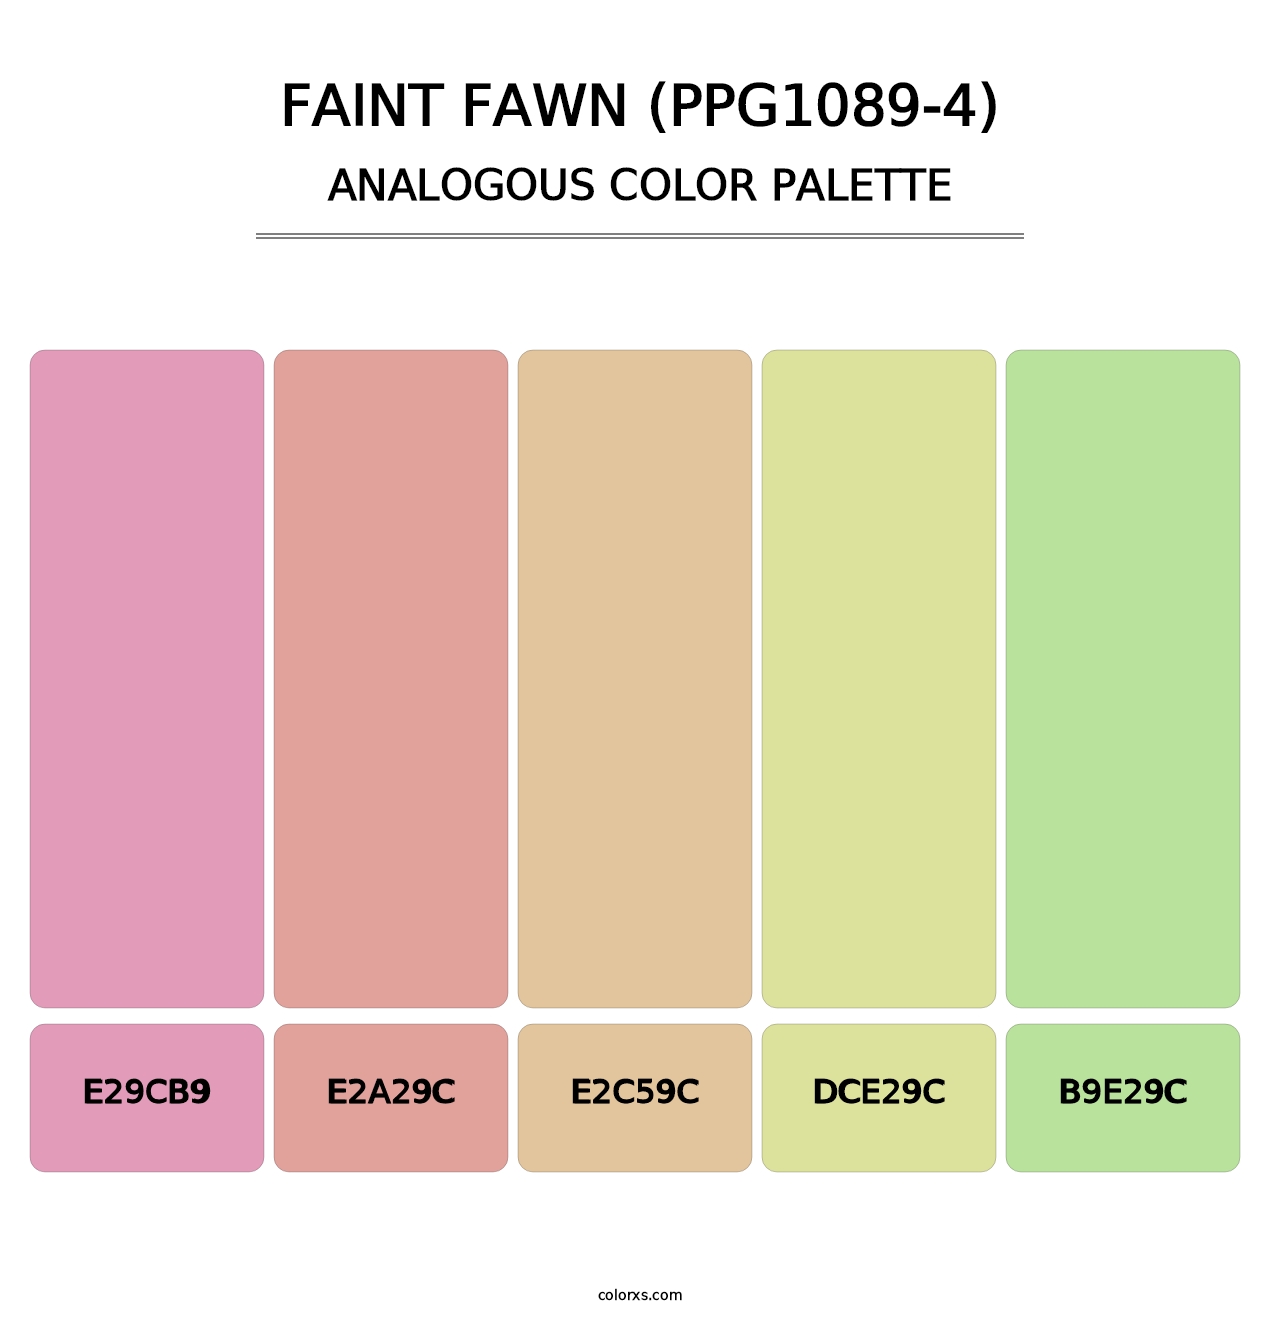 Faint Fawn (PPG1089-4) - Analogous Color Palette